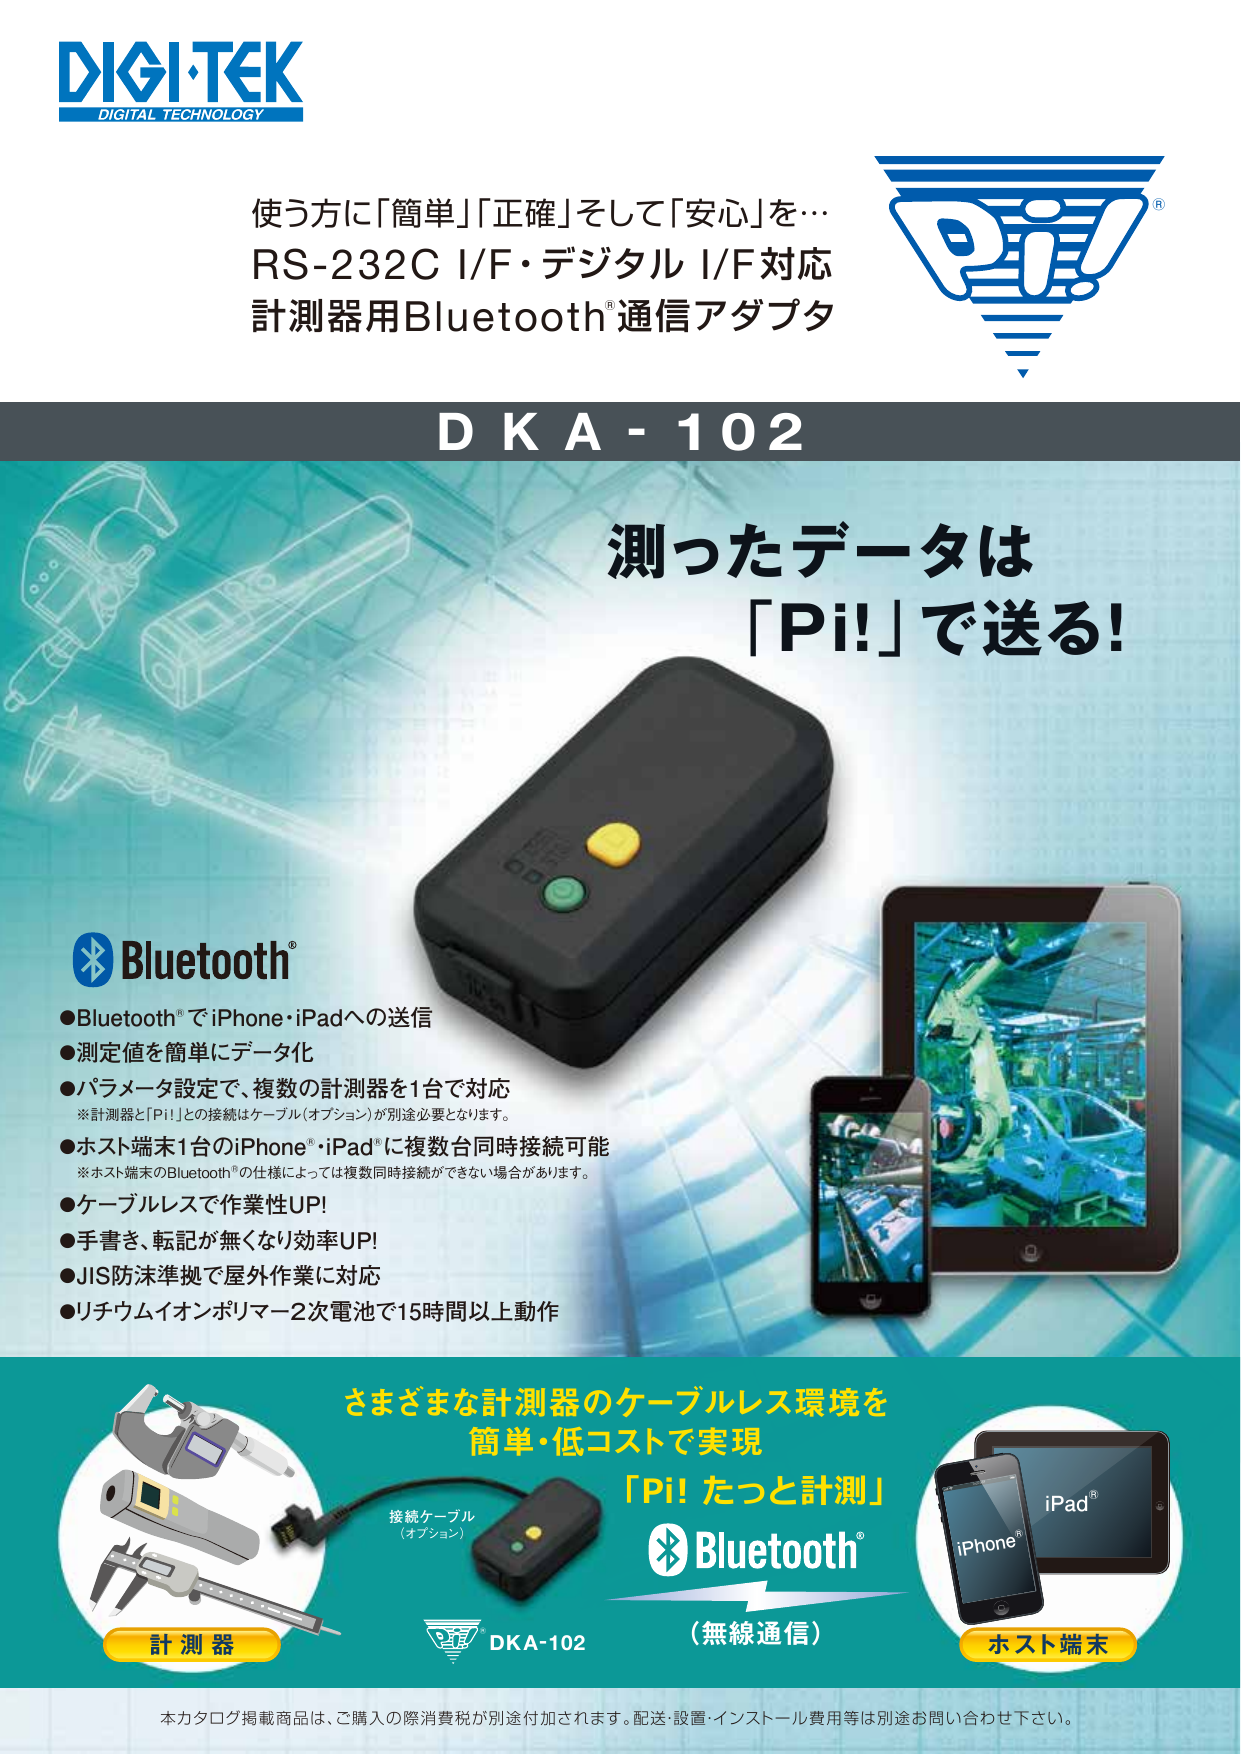 計測器Bluetoothアダプタ Ｐｉ！® DKA-102（株式会社ディジ・テック）のカタログ無料ダウンロード | Apérza  Catalog（アペルザカタログ） | ものづくり産業向けカタログサイト